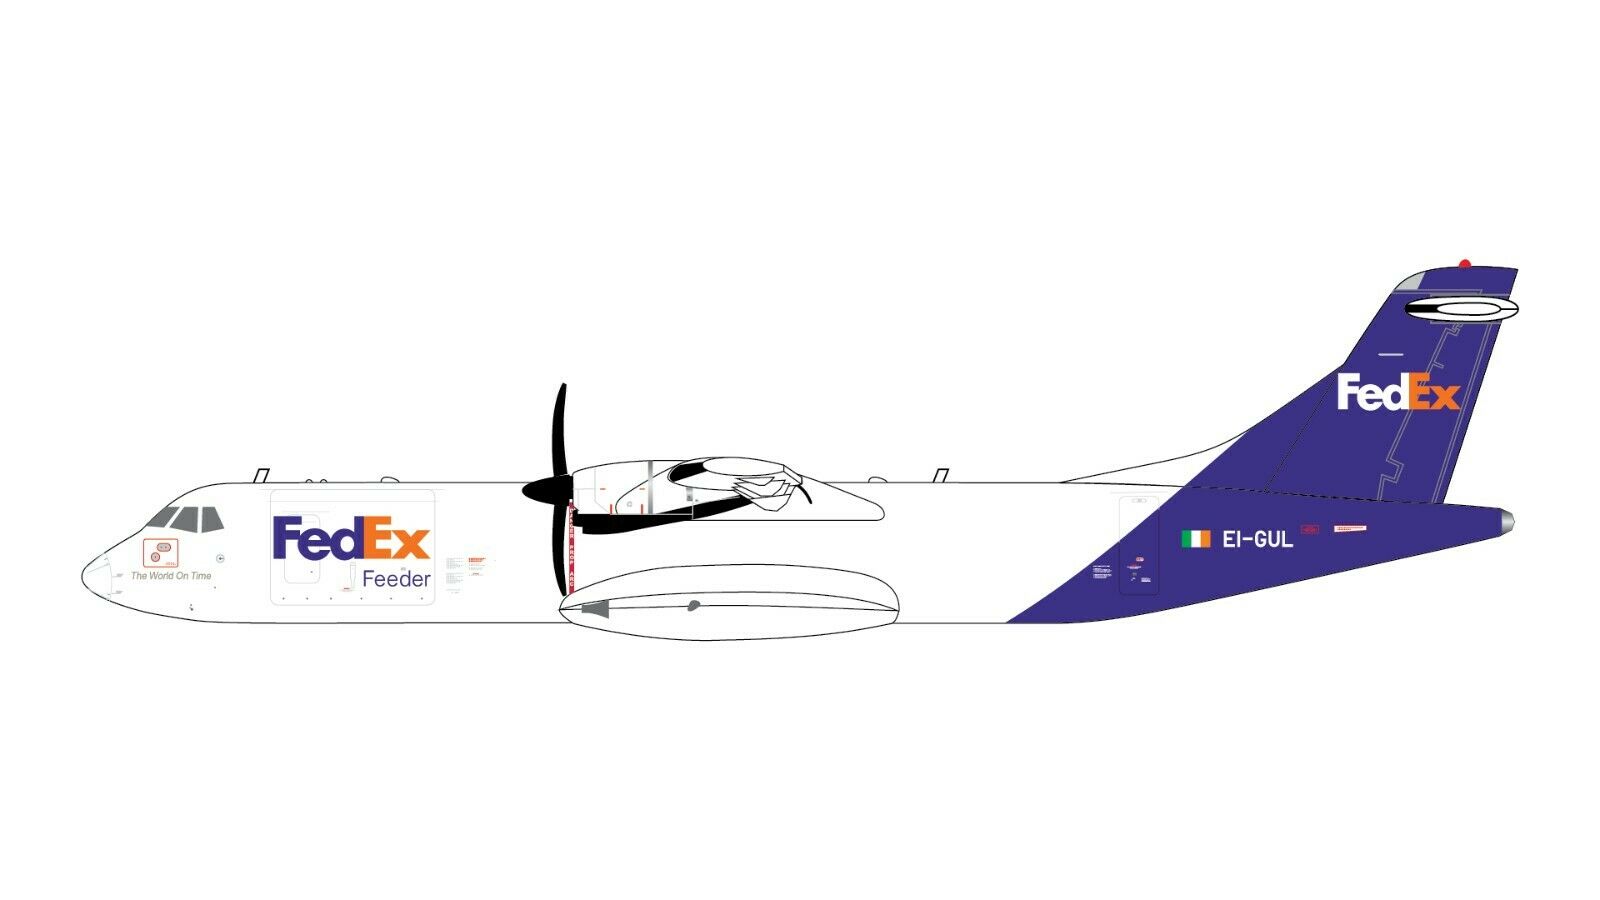 Fedex Feeder Atr 72-600f Ei-gul Gemini Jets Gjfdx1986 Scale 1:400 Pre-order